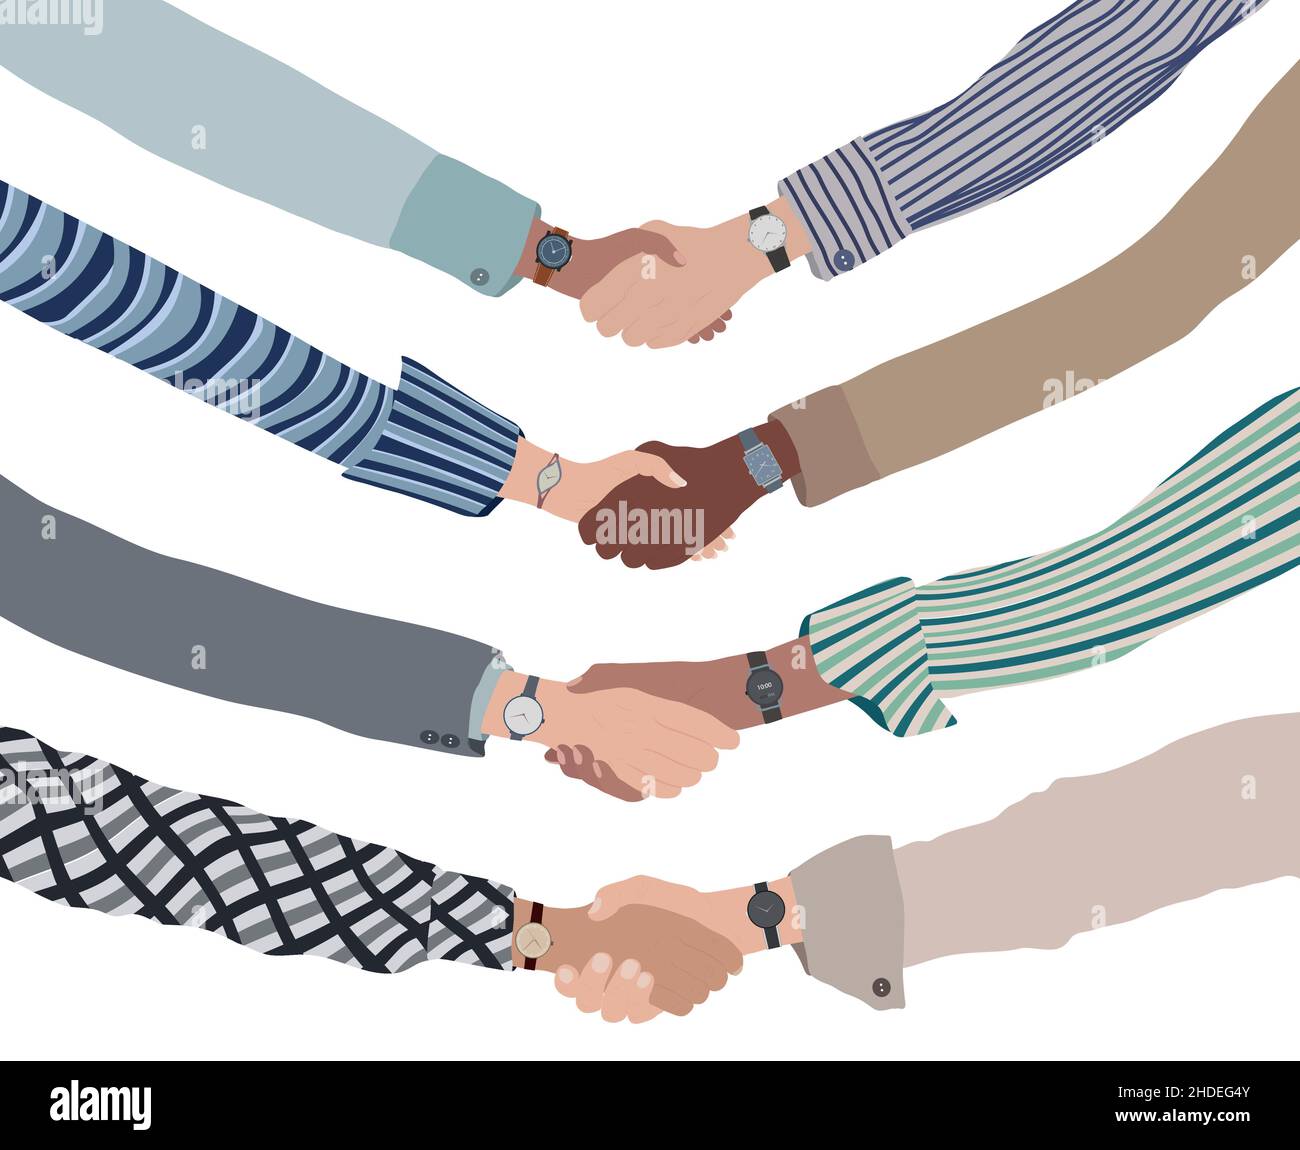 Nahaufnahme von Handshake zwischen Geschäfts- oder Finanzleuten. Konzept von Partnerschaft-Kommunikation-Deal-Erfolg und Vereinbarungen zwischen Geschäftsreisenden. Team Stock Vektor